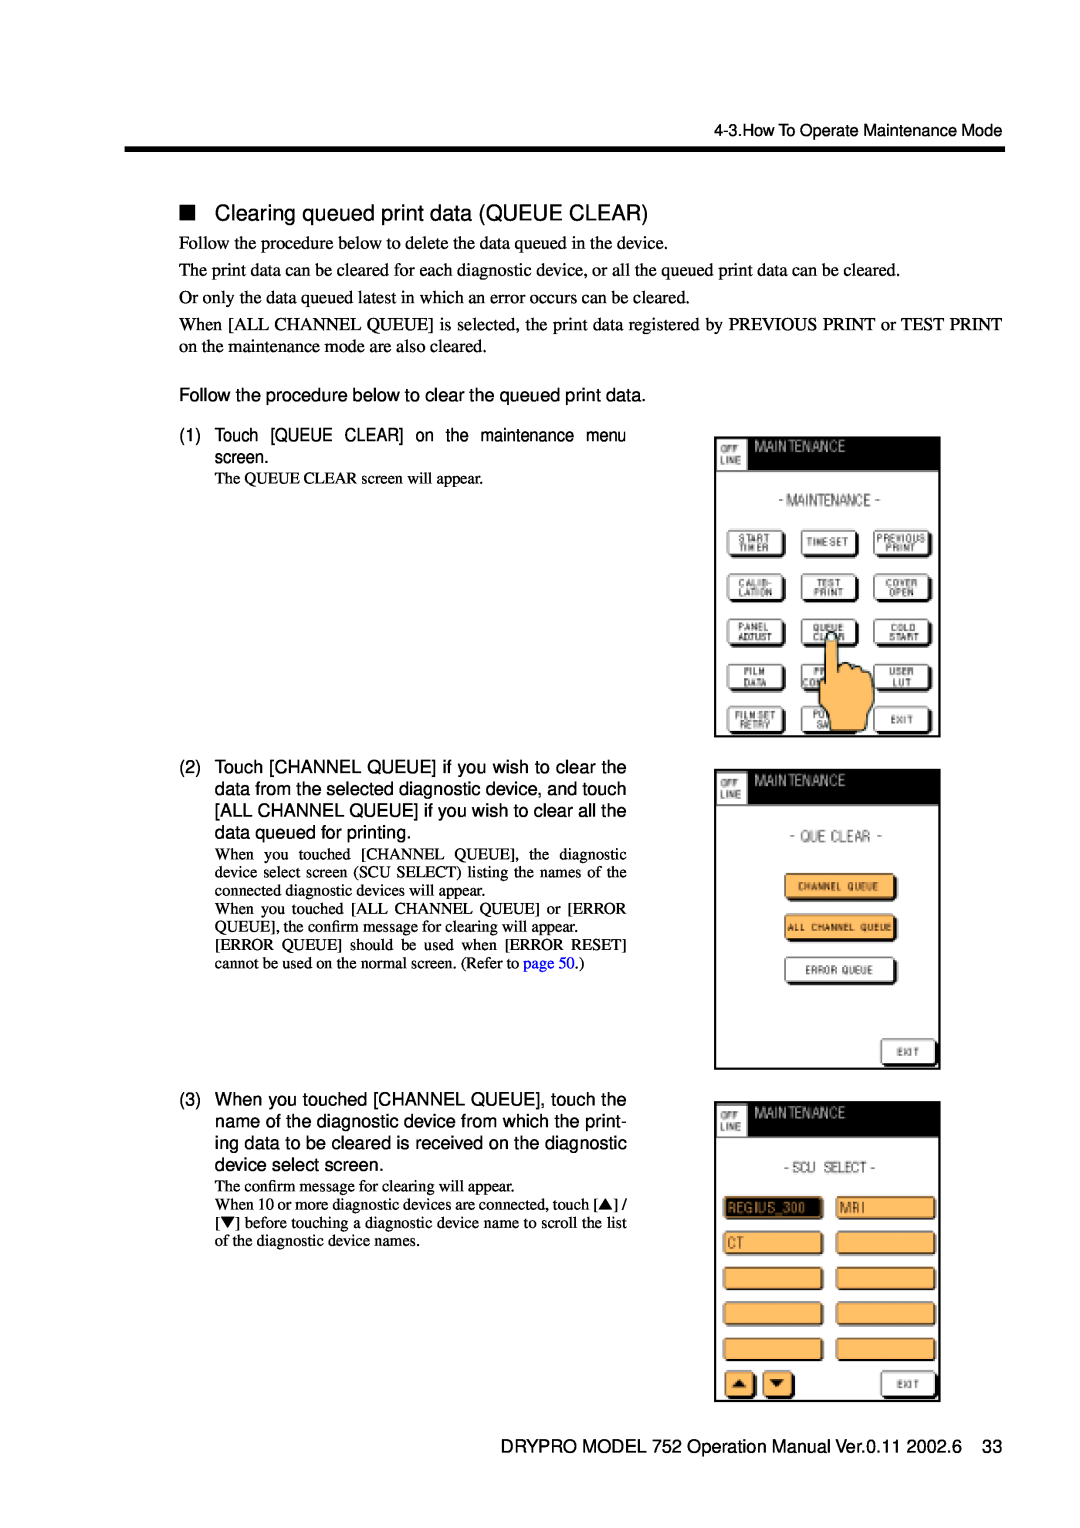 Konica Minolta 752 operation manual Clearing queued print data QUEUE CLEAR 